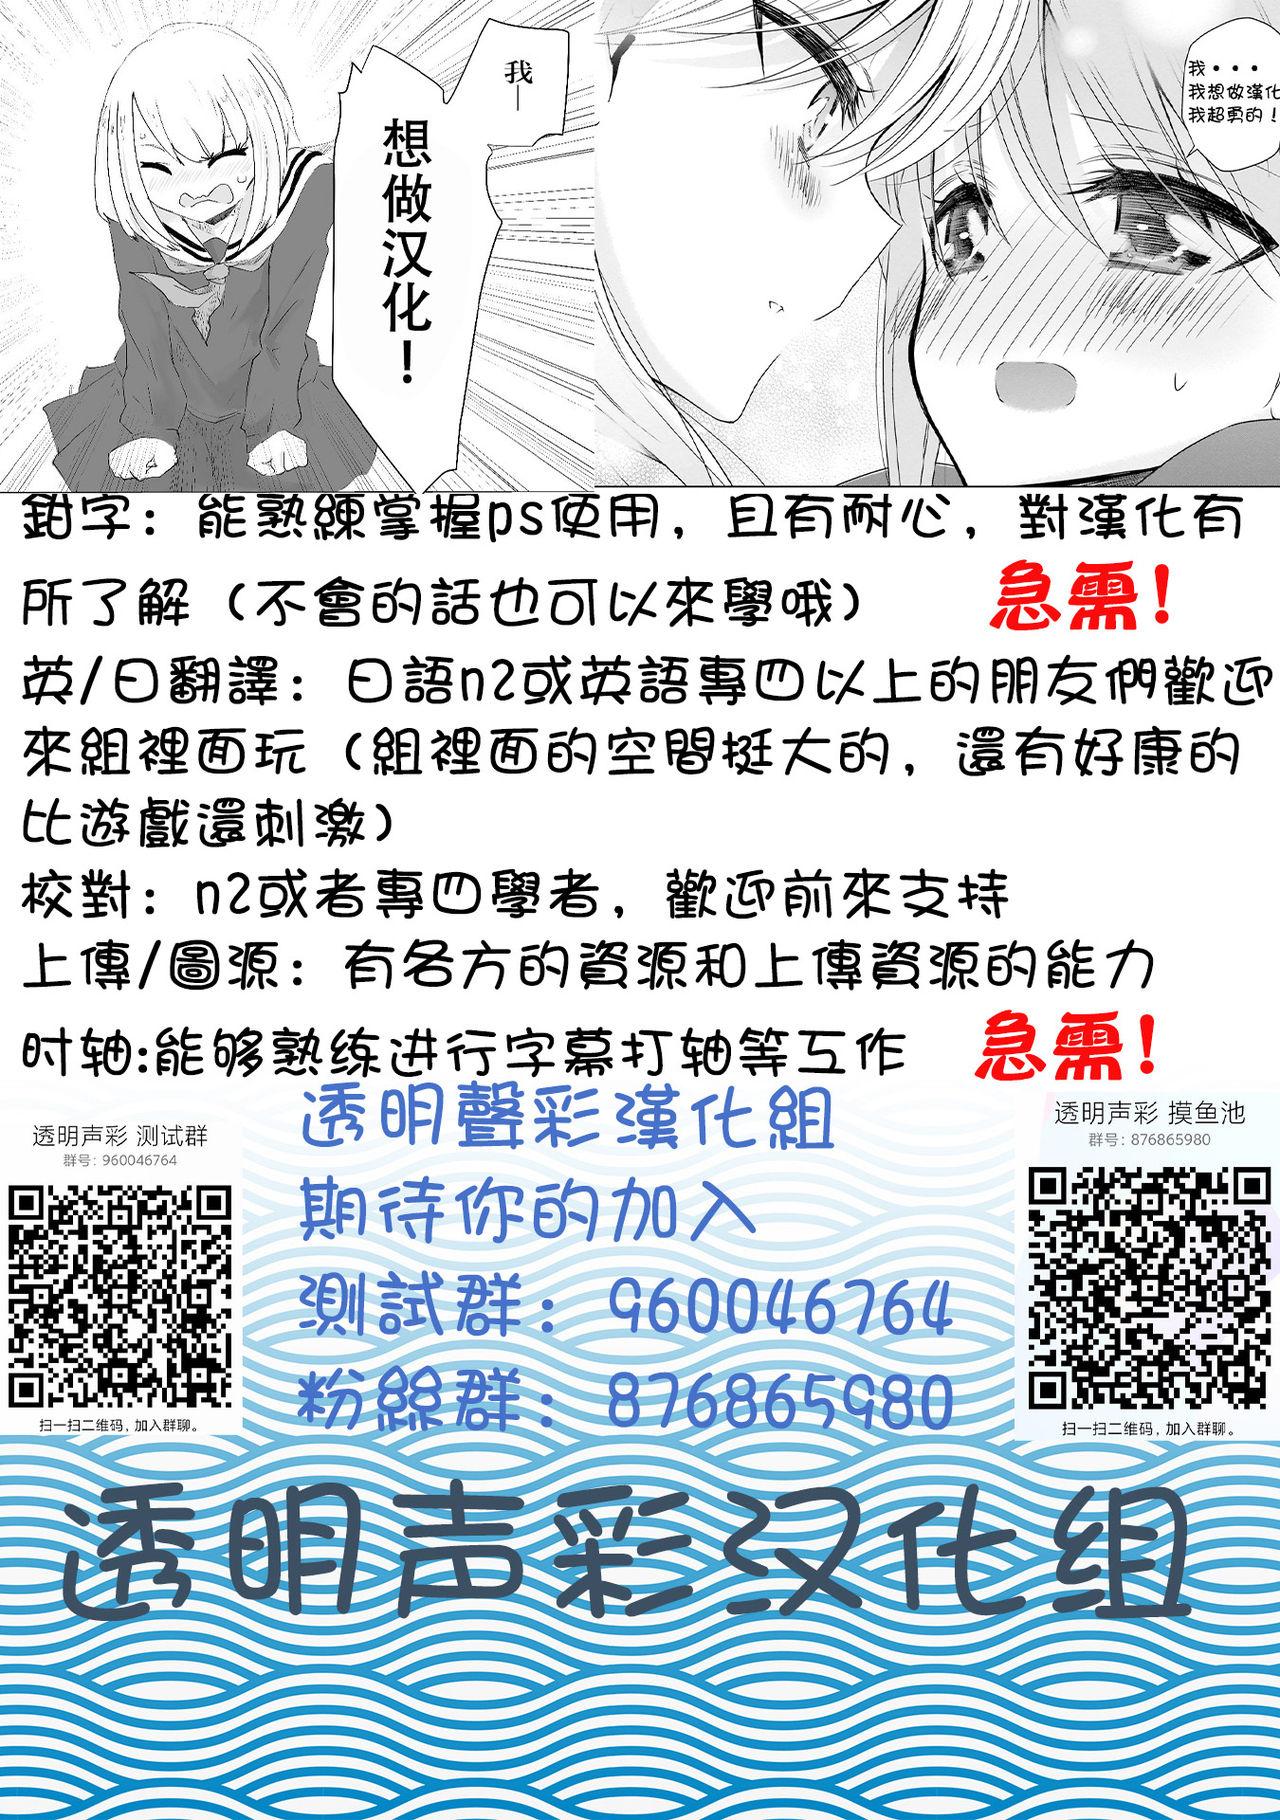 Buceta Secret account Mitsuka-chan part5 Spying - Page 14